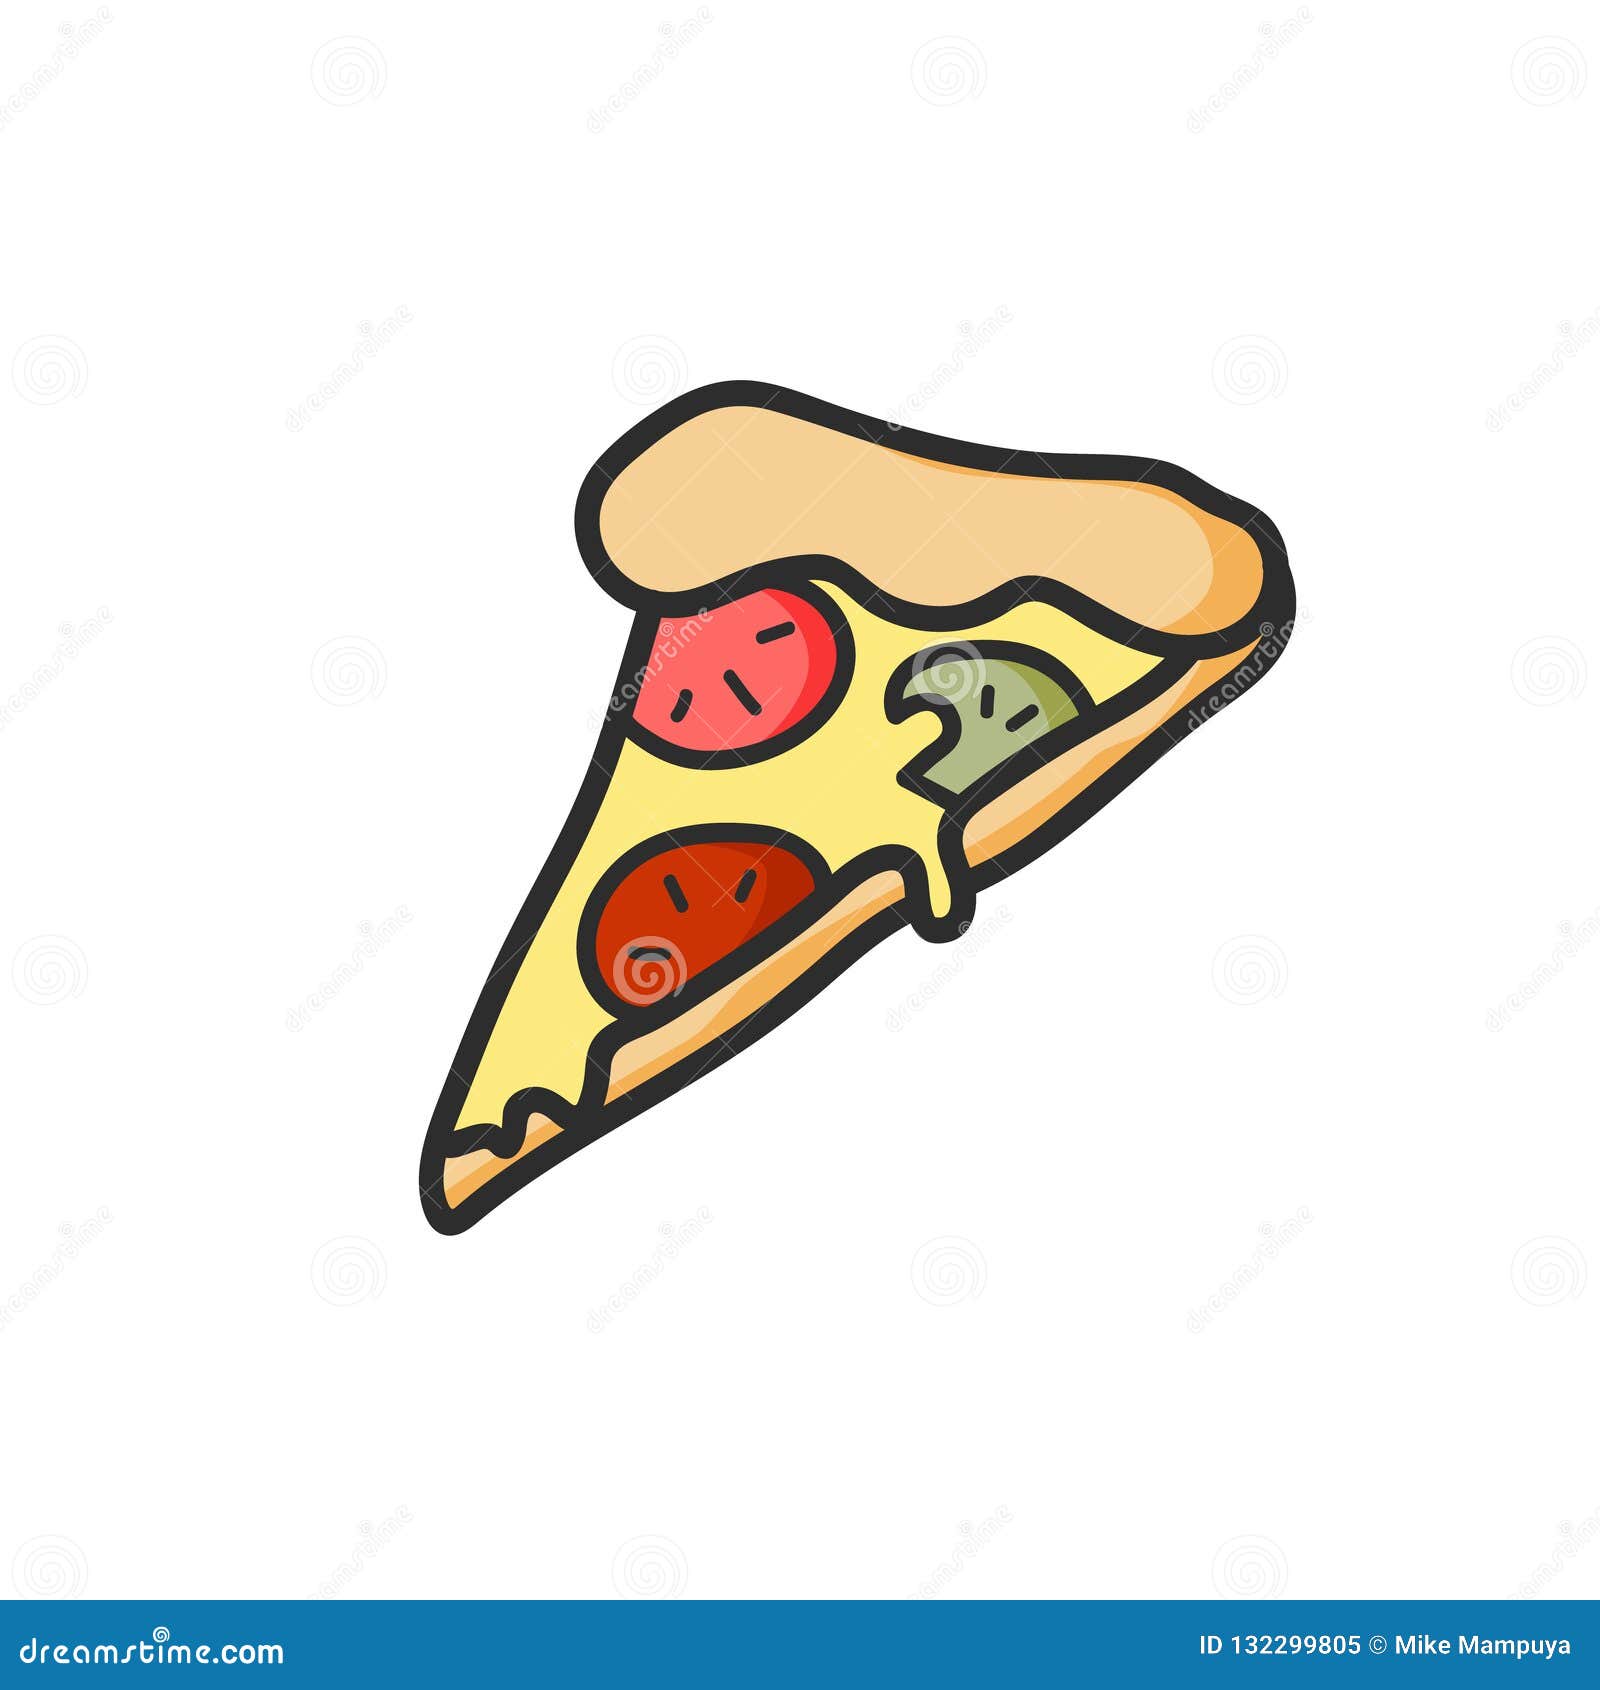 Cute Pizza Stock – 3,543 Cute Pizza Slice Stock Illustrations, Vectors & Clipart - Dreamstime